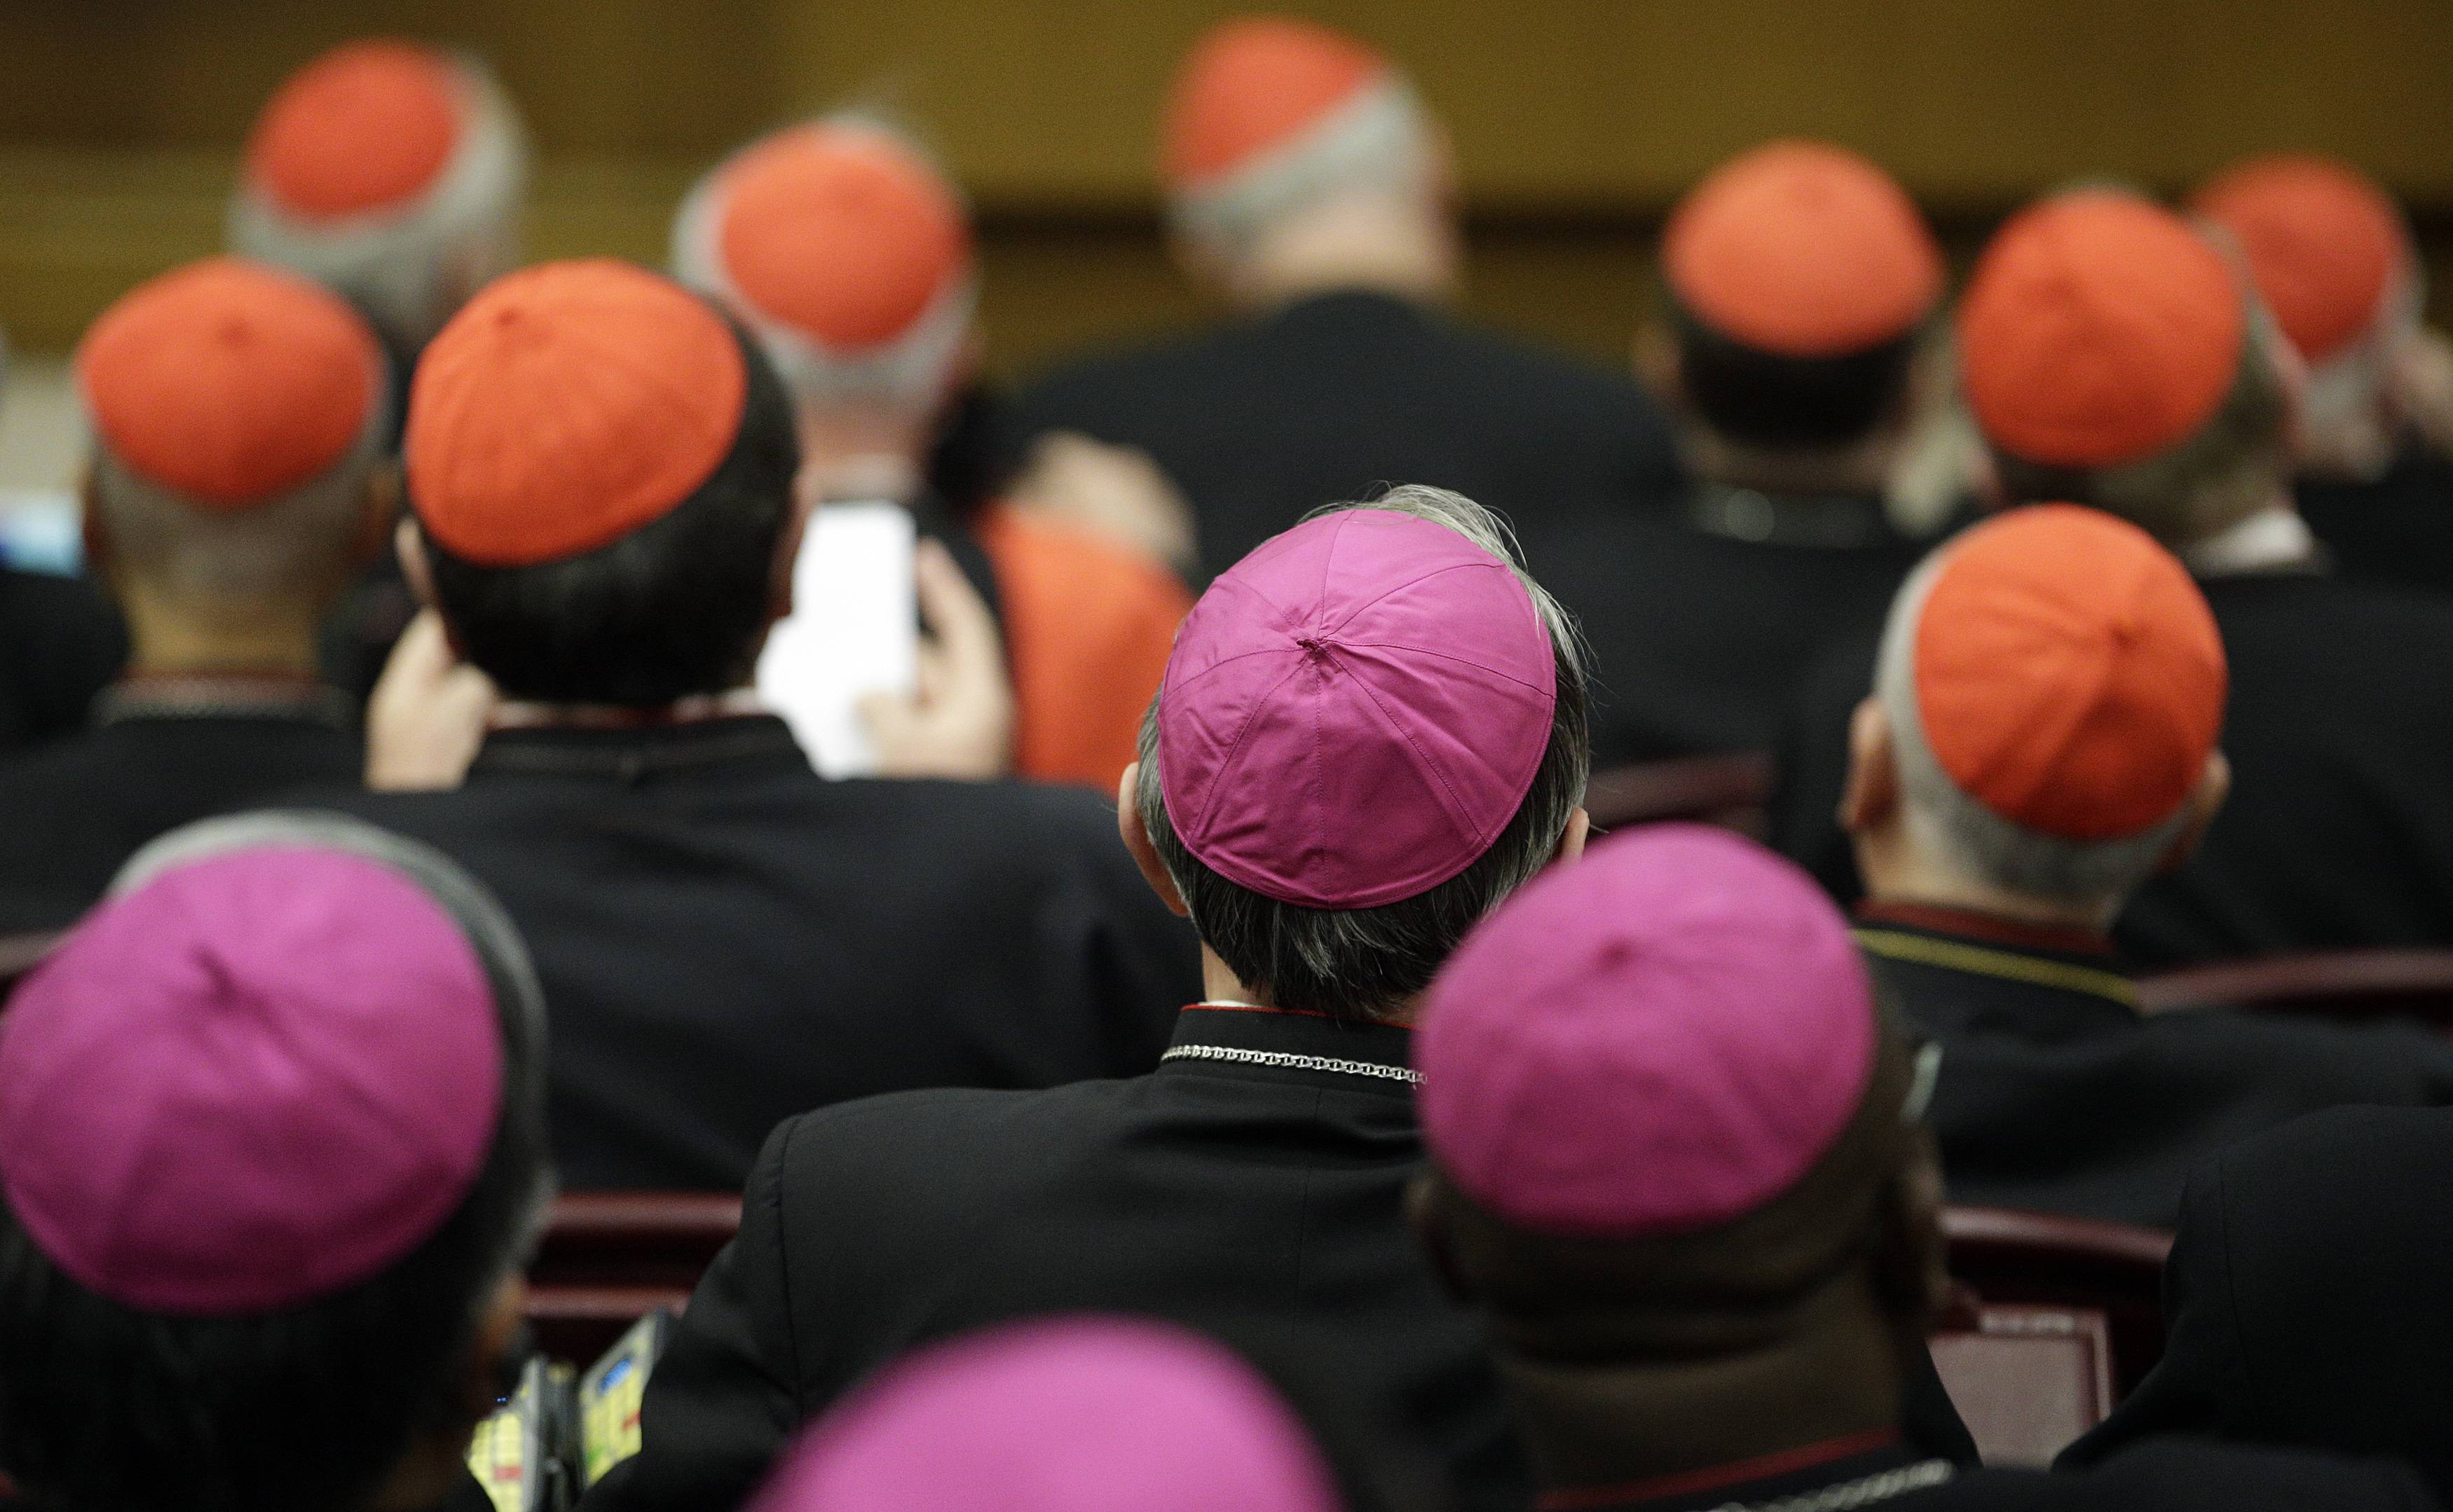 Obispos en el Sínodo piden perdón por abusos sexuales y traición a los jóvenes